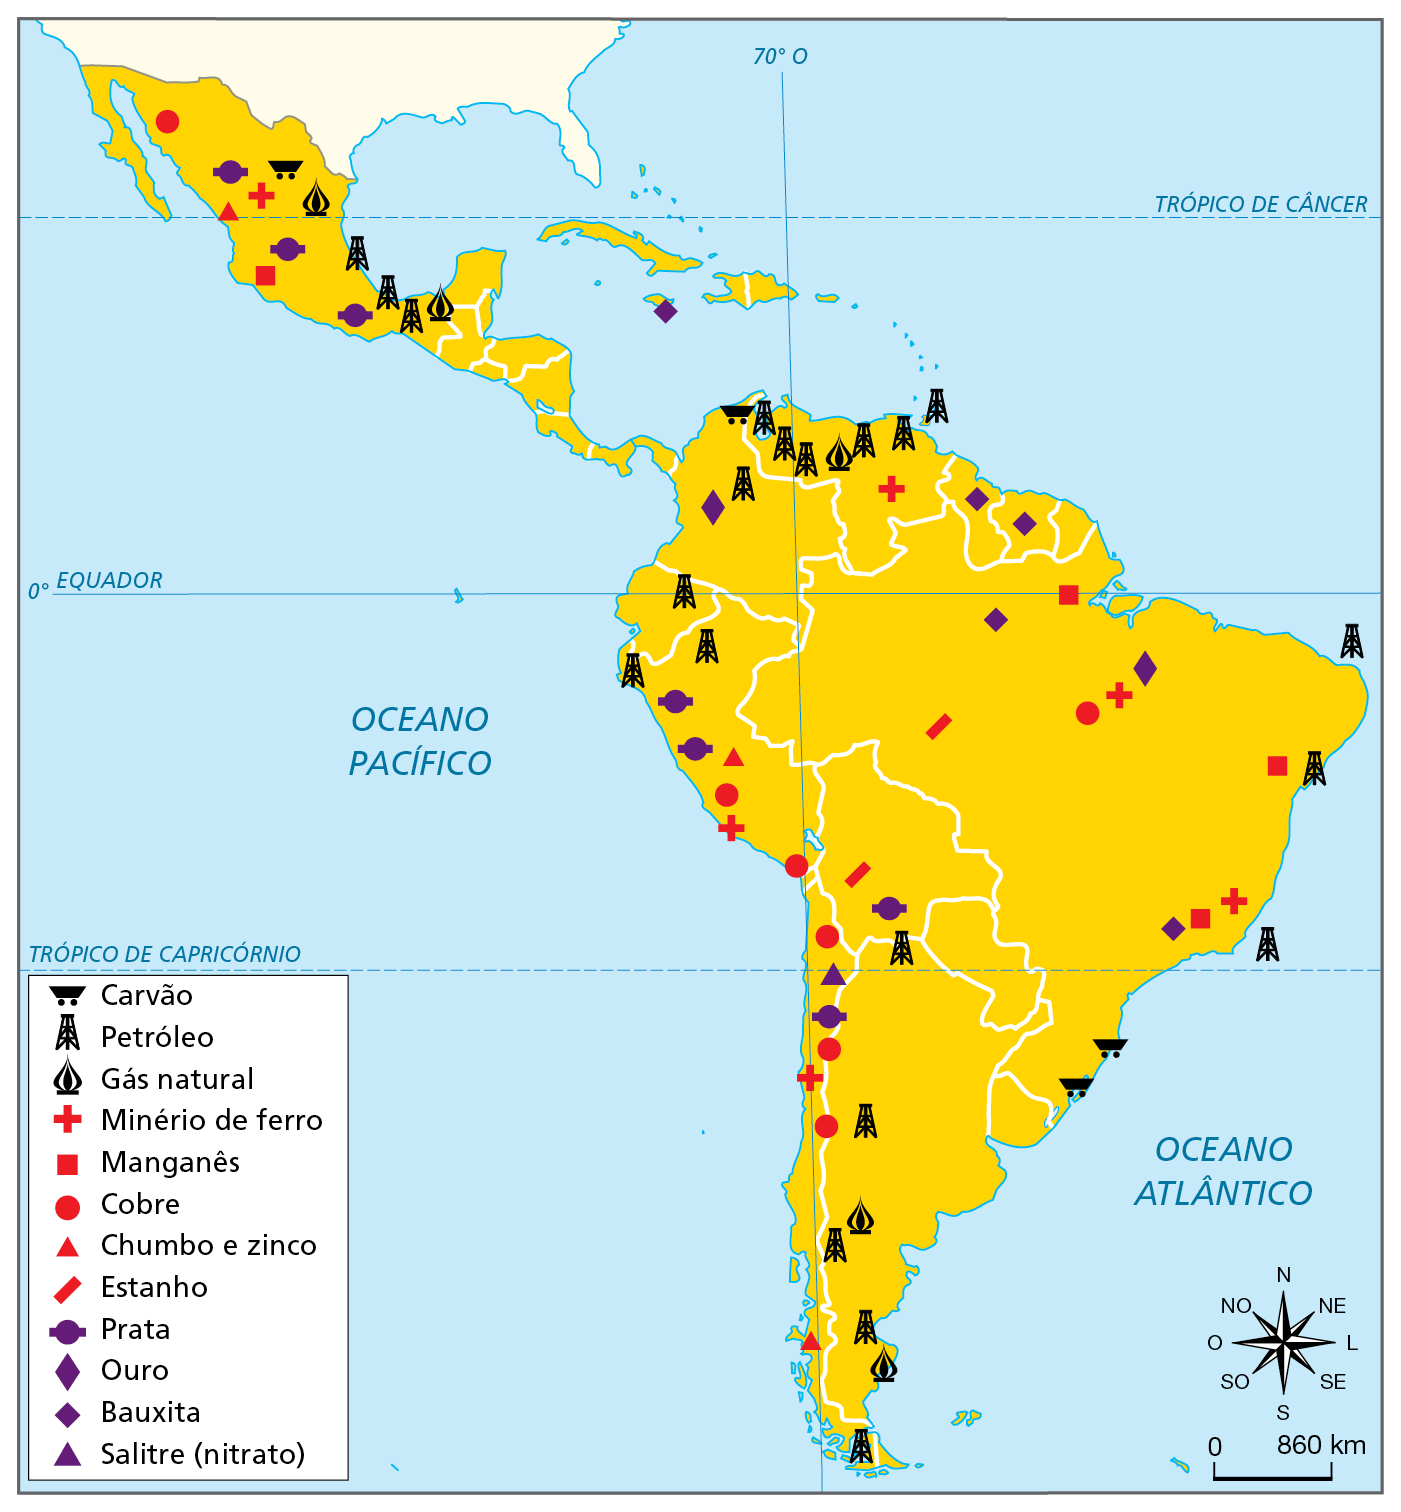 Mapa. América Latina: alguns recursos minerais e fontes de energia.  Mapa da América do Sul, América Central e México, representando a localização de alguns de seus recursos minerais e fontes de energia. Carvão: norte do México, noroeste da América do Sul e sul do Brasil. Petróleo: sul do México, alta concentração no norte da Venezuela, em Colômbia, Equador e norte do Peru, na Argentina, de norte a sul; no Brasil, costa sudeste e nordeste; Gás natural: sul da Argentina, na Venezuela, e na faixa leste do México.  Minério de ferro: sudeste e norte do Brasil, na Venezuela, no Chile, no Peru e no México.  Manganês: sudeste, nordeste e norte do Brasil, e costa oeste do México.  Cobre: norte do Brasil, no Chile, no Peru e no México. Chumbo e zinco: no Chile, no Peru e no México. Estanho: noroeste do Brasil e na Bolívia.  Prata: na Bolívia, no Chile, no Peru e no México. Ouro: norte do Brasil e na Colômbia.   Bauxita: sudeste e norte do Brasil, na Guiana e no Suriname e em ilha da América Central. Salitre (nitrato): no Chile.  À direita, rosa dos ventos e escala de 0 a 860 quilômetros.